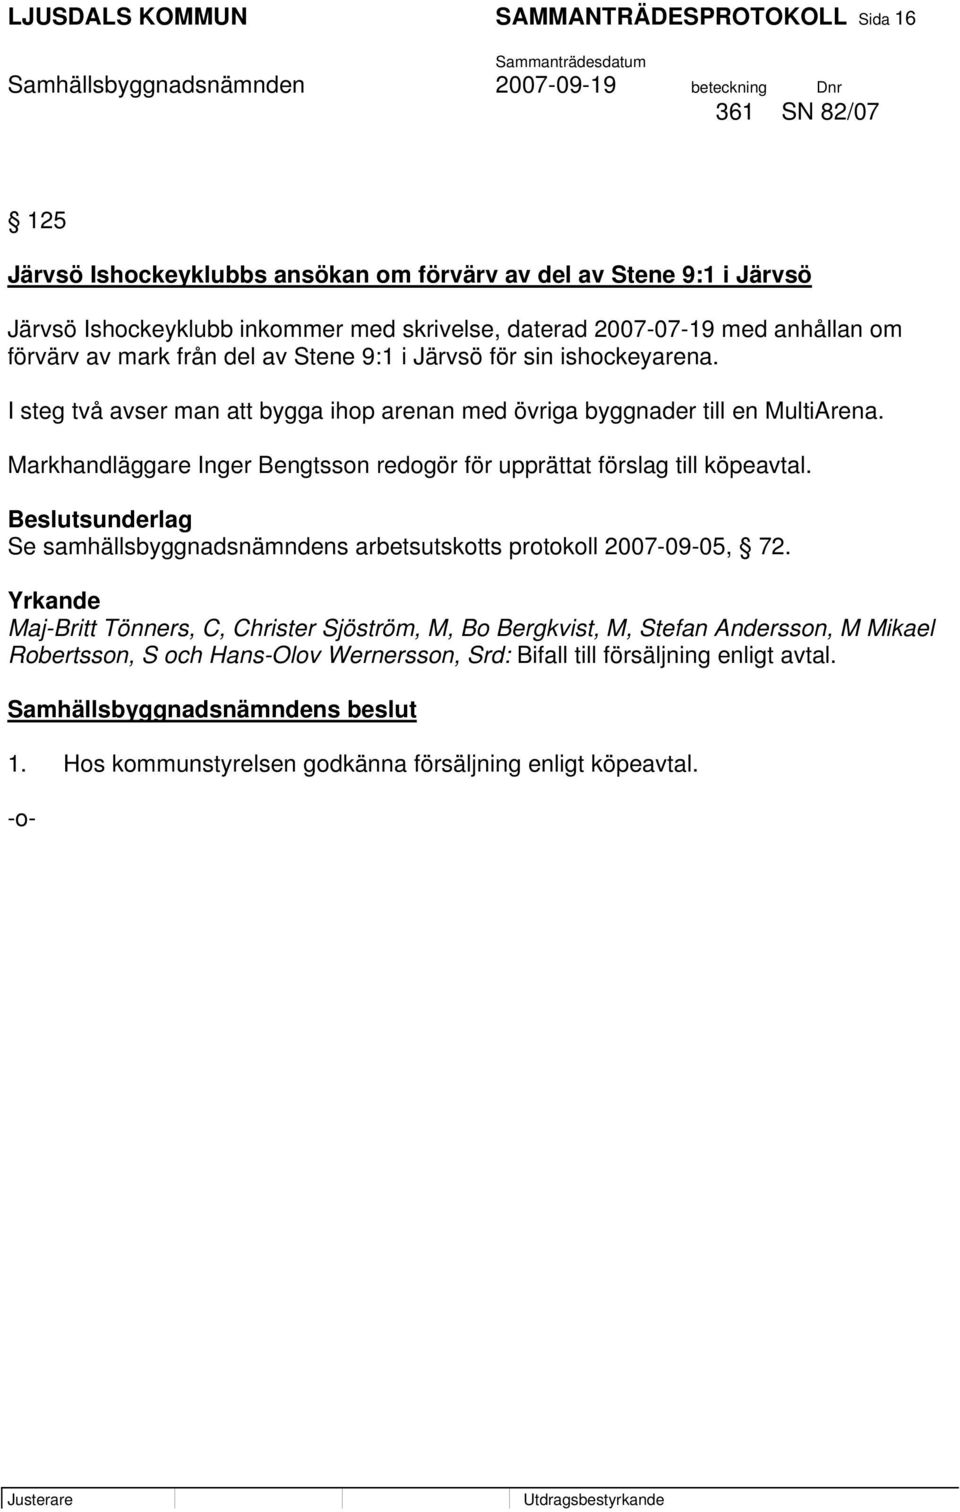 Markhandläggare Inger Bengtsson redogör för upprättat förslag till köpeavtal. Beslutsunderlag Se samhällsbyggnadsnämndens arbetsutskotts protokoll 2007-09-05, 72.